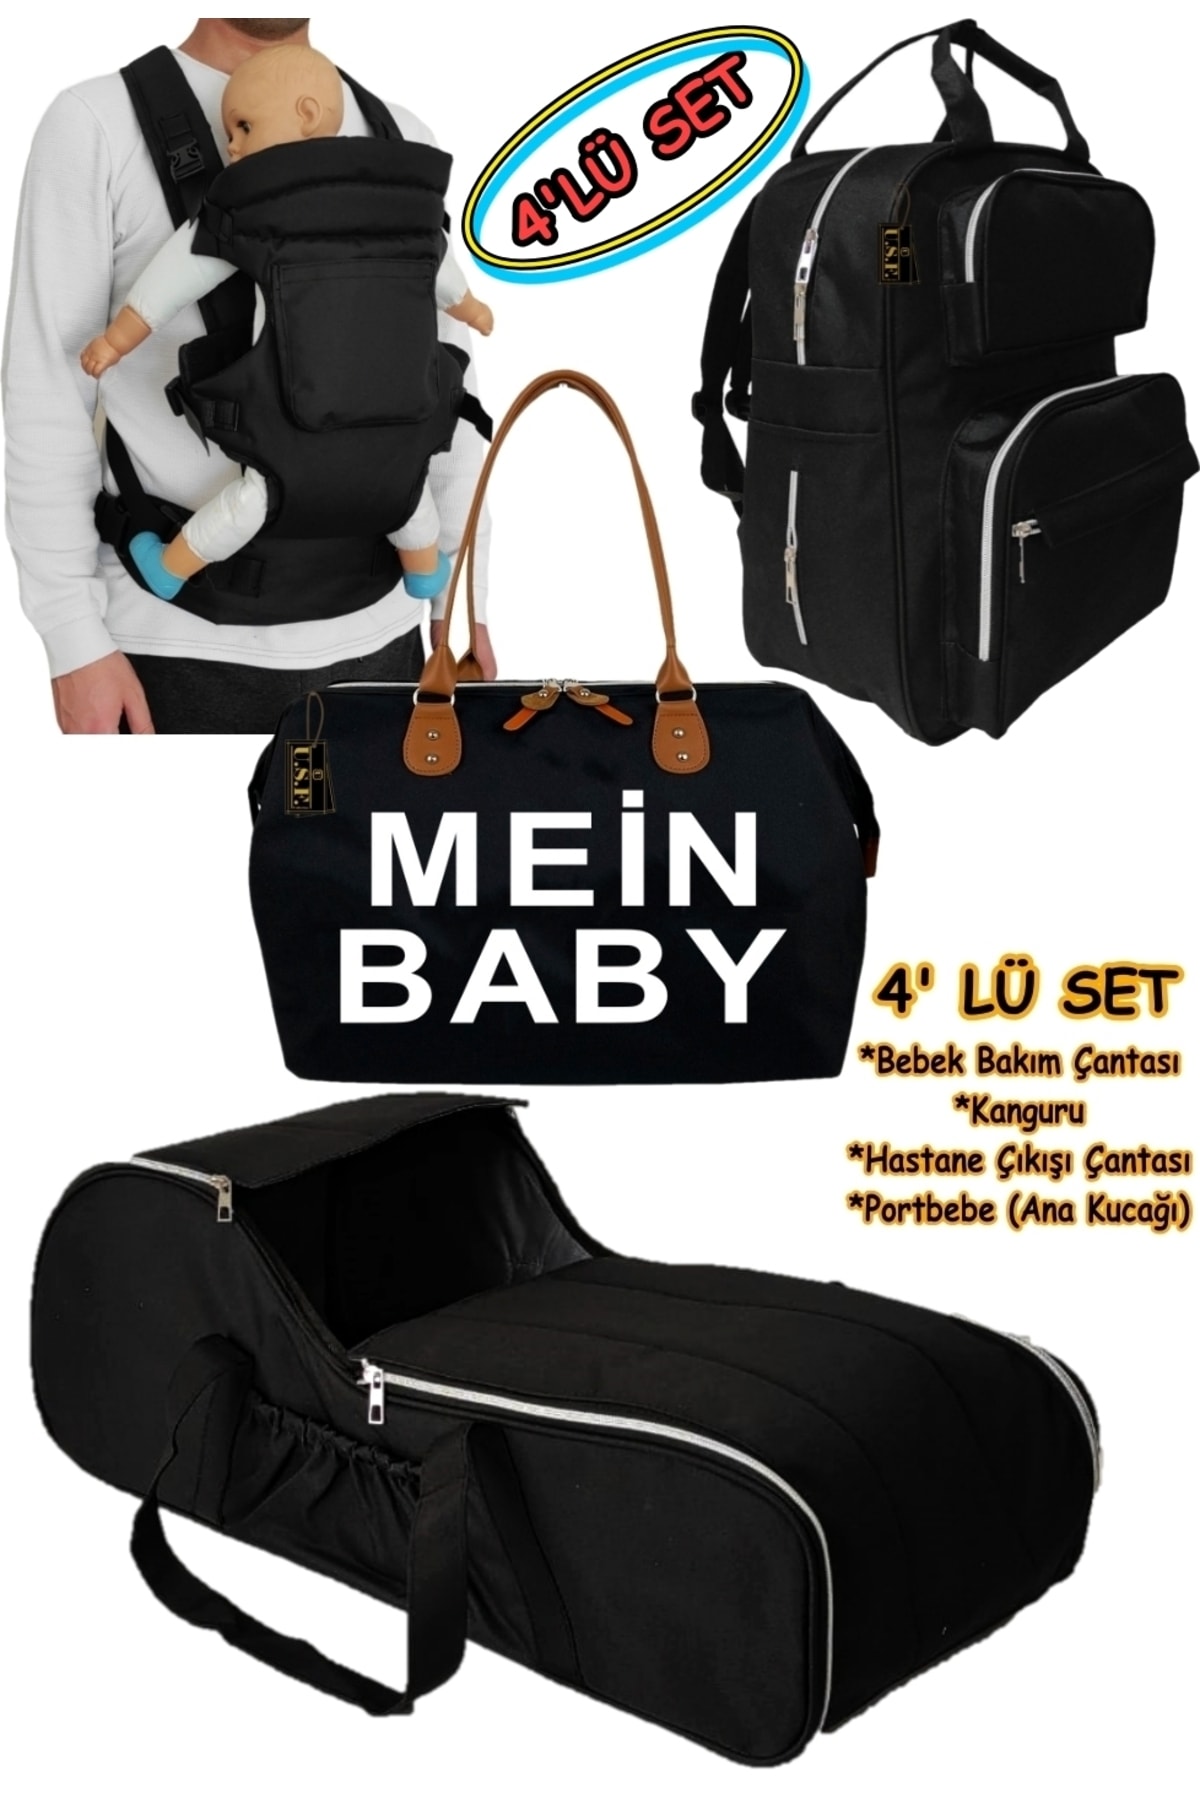 USF Portbebe Ana Kucağı + Bebek Taşıma Kanguru + Bebek Bakım Çantası 3 Lü Set Düz-siyah